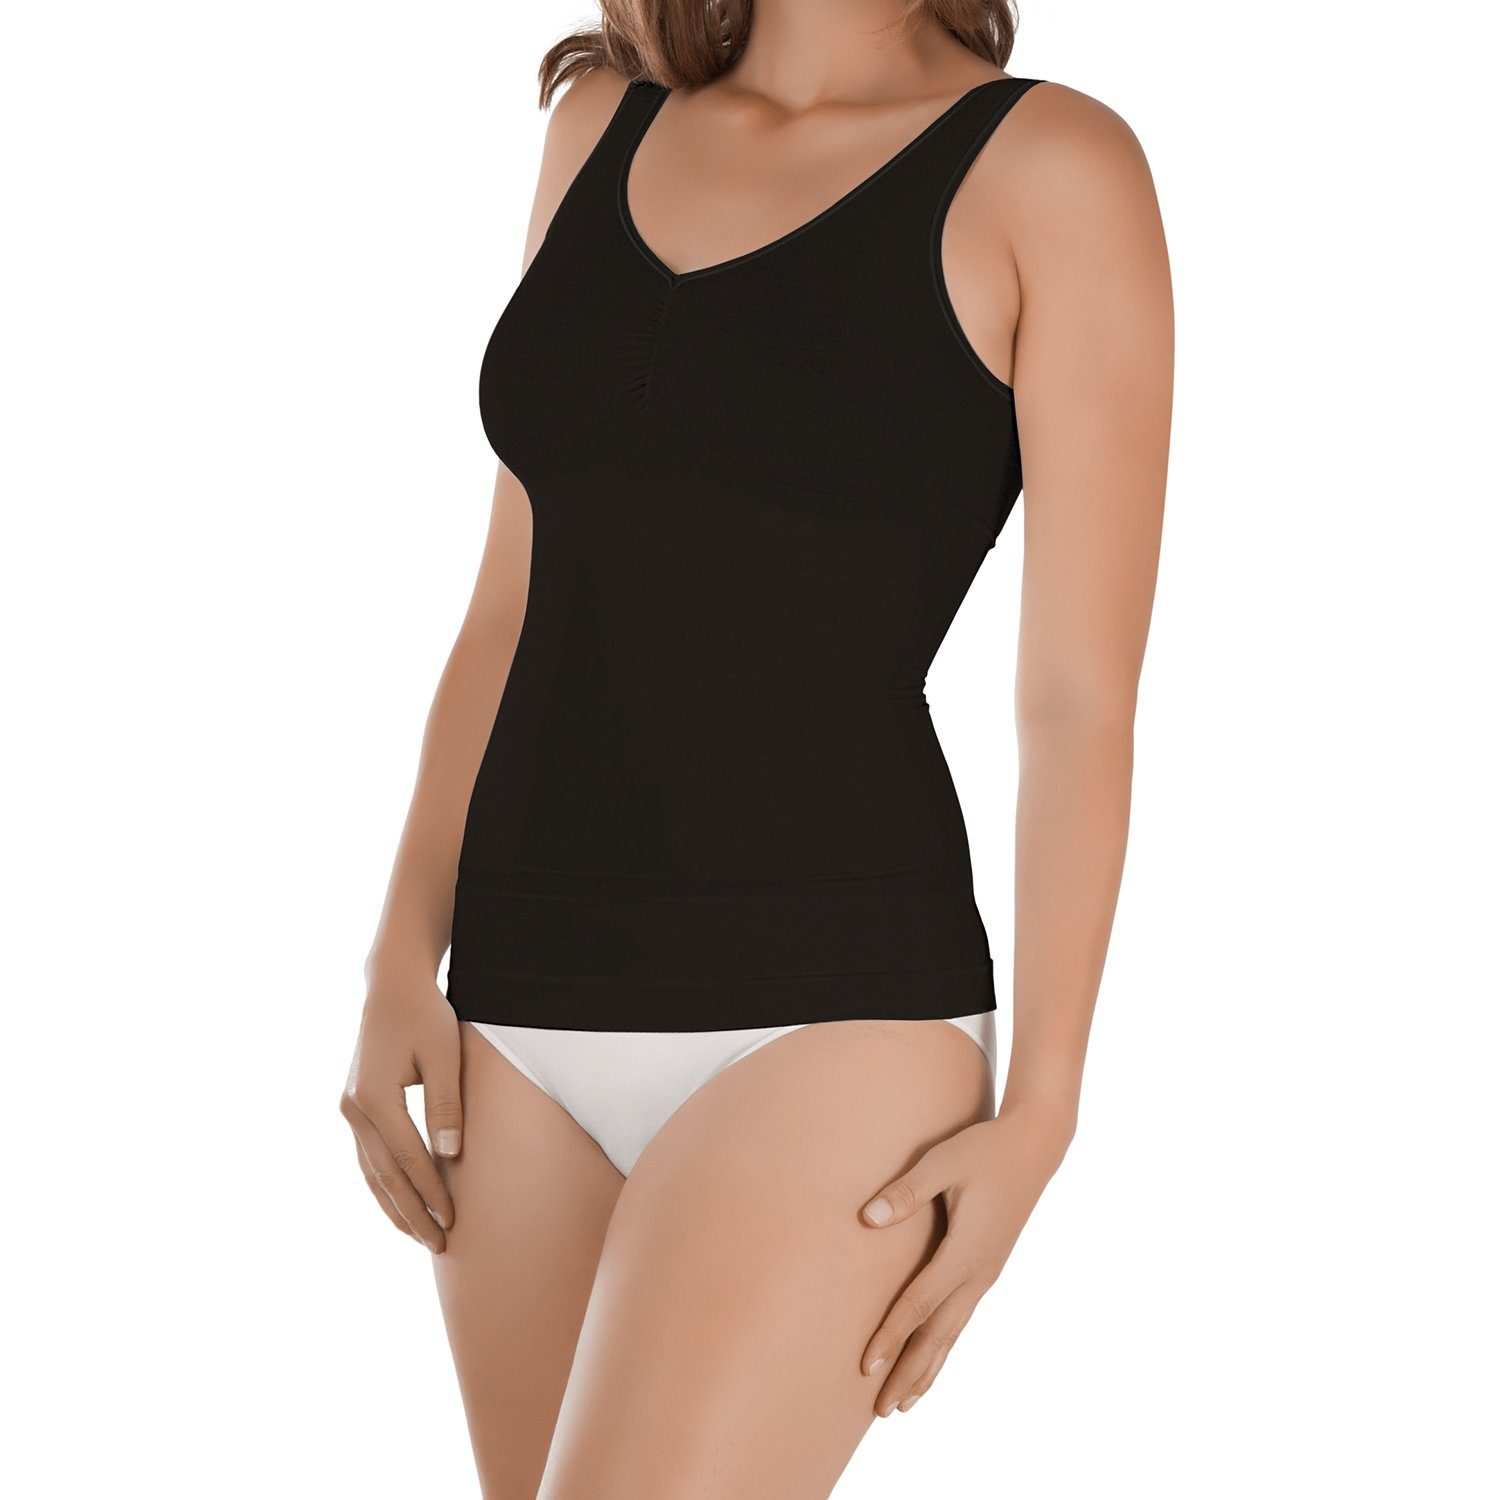 celodoro Unterhemd Damen Form-Top - Seamless Unterhemd mit Shaping-Effekt Schwarz